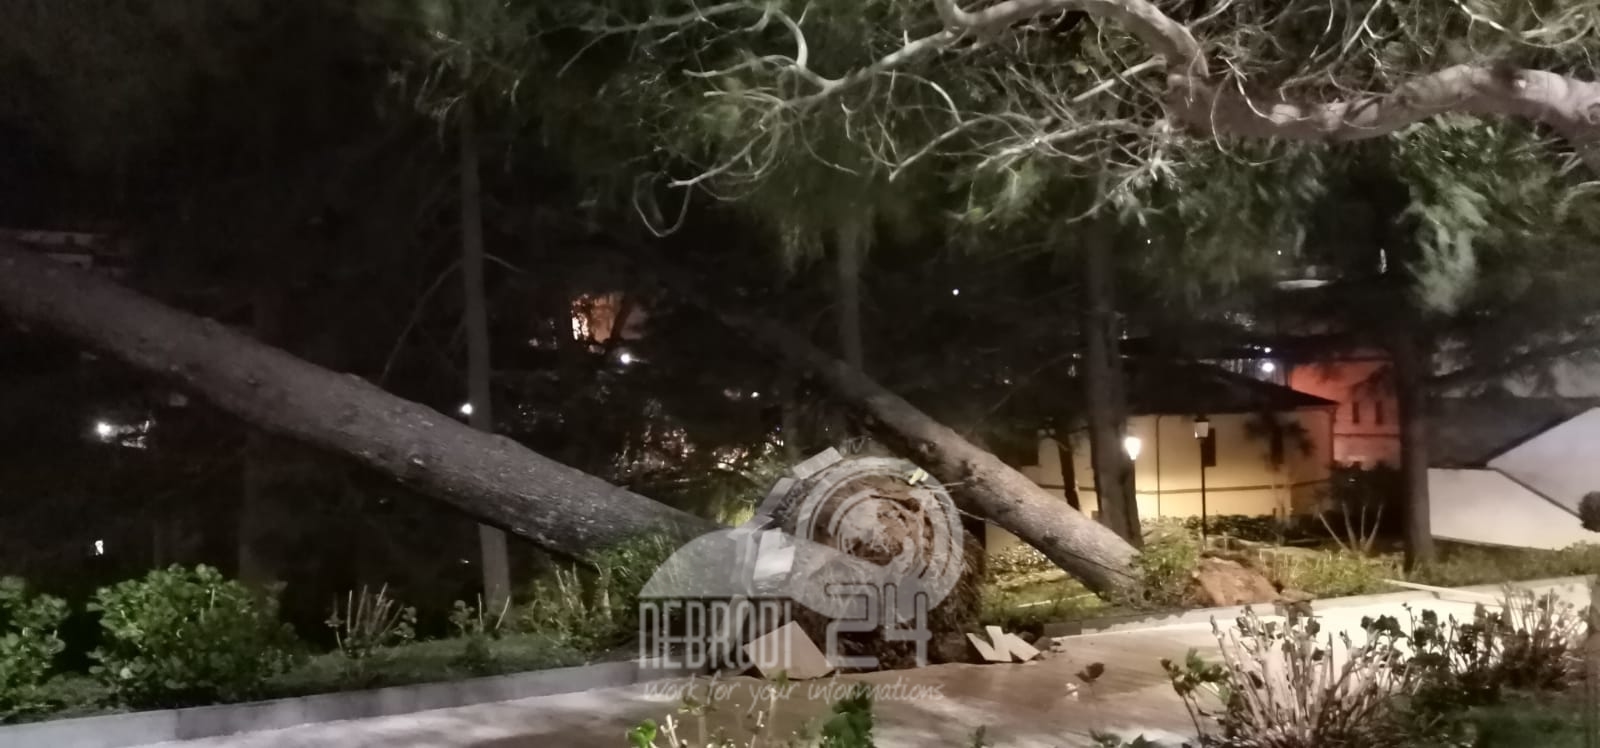 Castell’Umberto – Il forte vento ha sradicato diversi alberi. Una donna finisce in ospedale